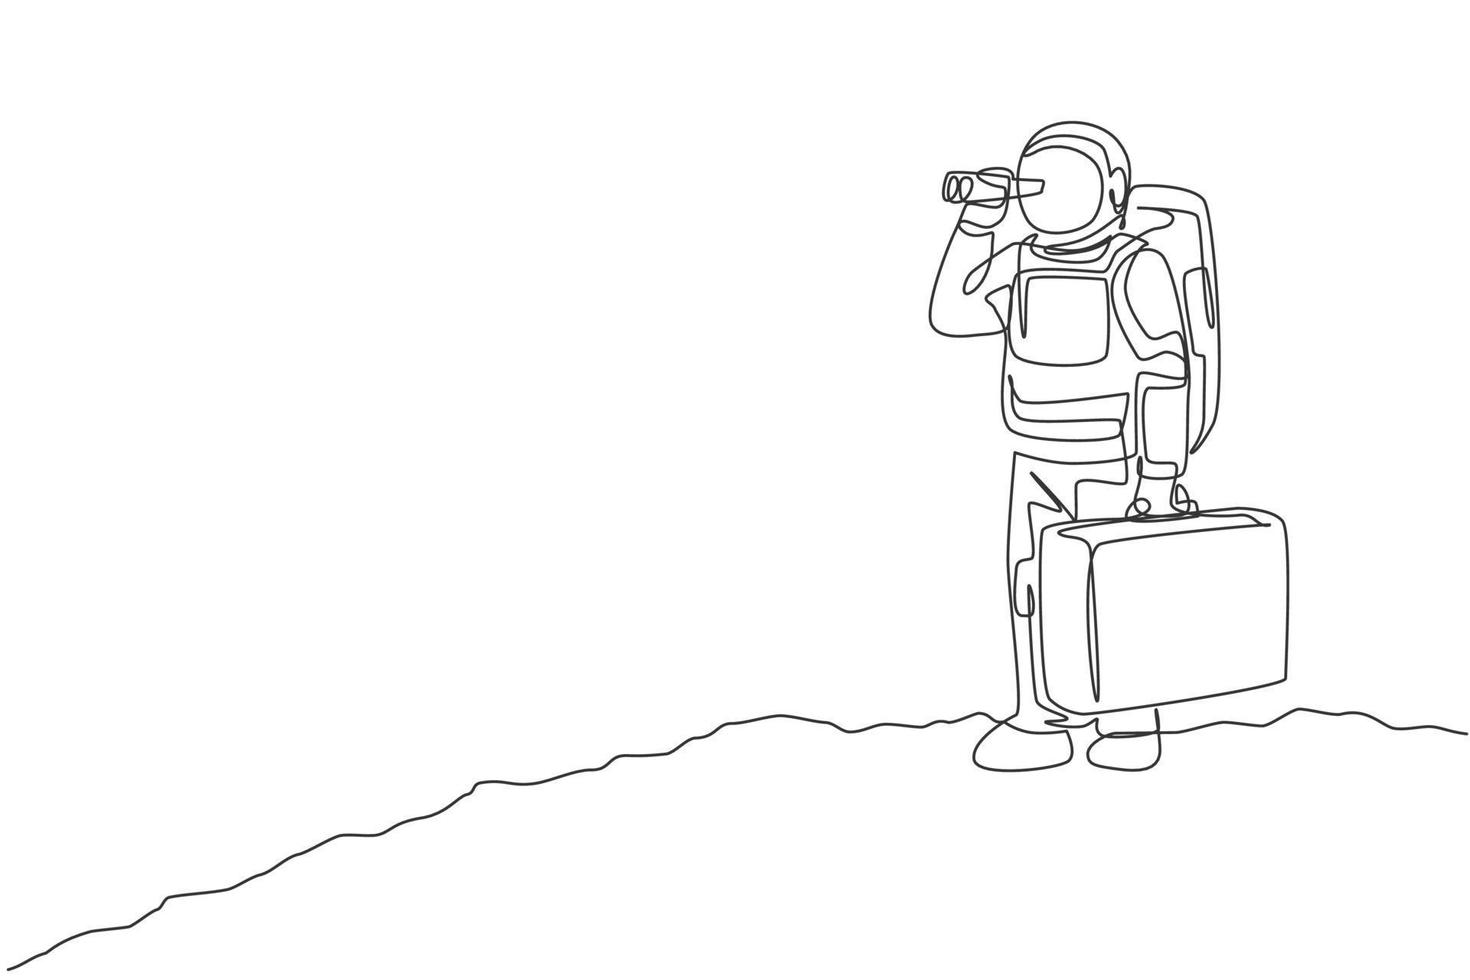 disegno a linea continua di un giovane astronauta che tiene in mano la valigia e guarda con il binocolo sulla superficie lunare. concetto di galassia cosmica dell'uomo dello spazio. illustrazione vettoriale grafica di design alla moda di una linea di disegno